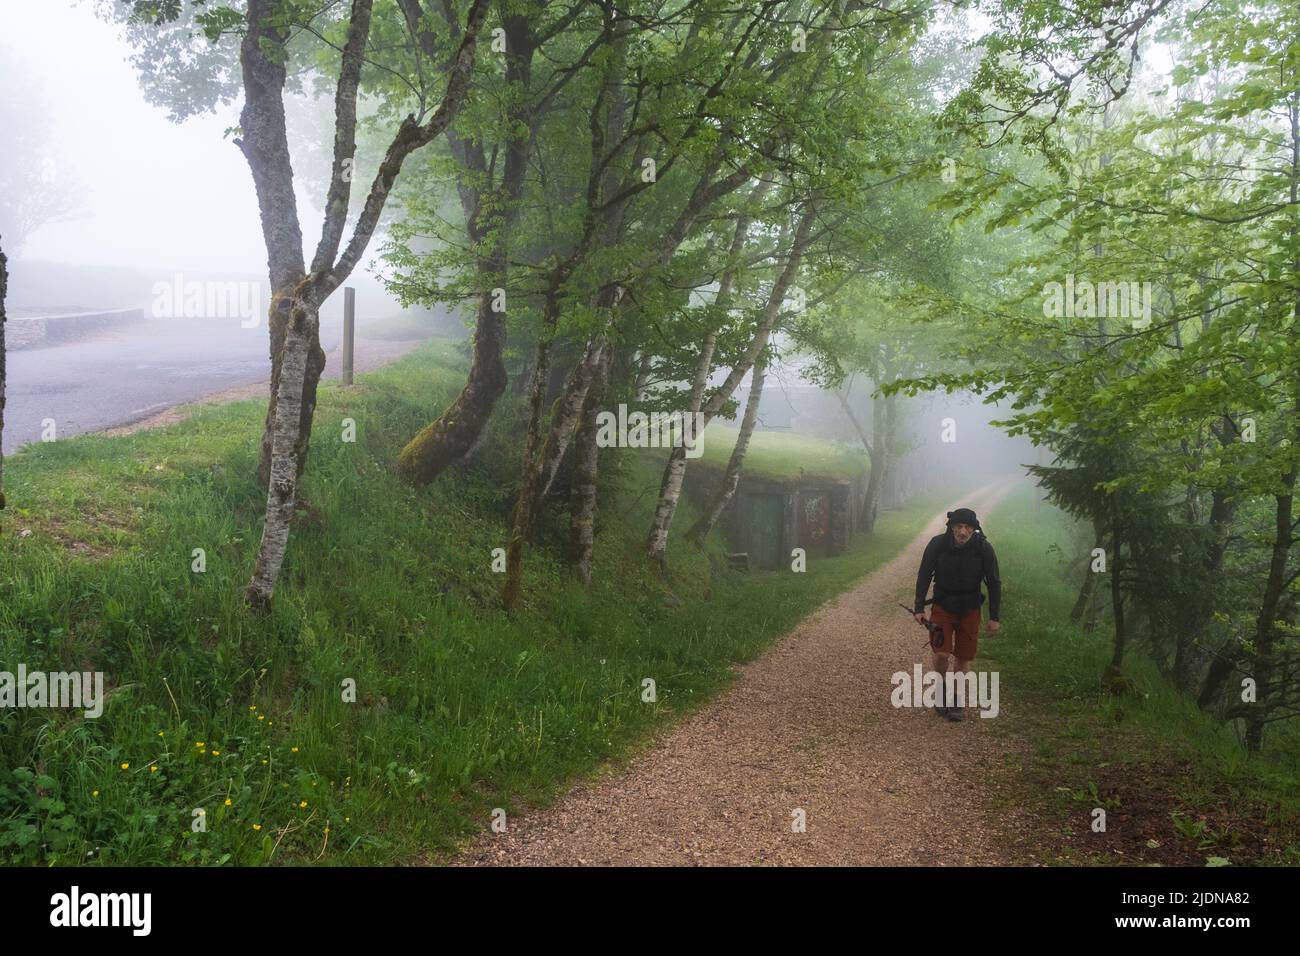 Spain, Galicia. Hiker Approaching O Cebreiro on a Foggy Morning. First Village in Galicia on the Camino de Santiago, Camino Frances, Pilgrims Way. Stock Photo